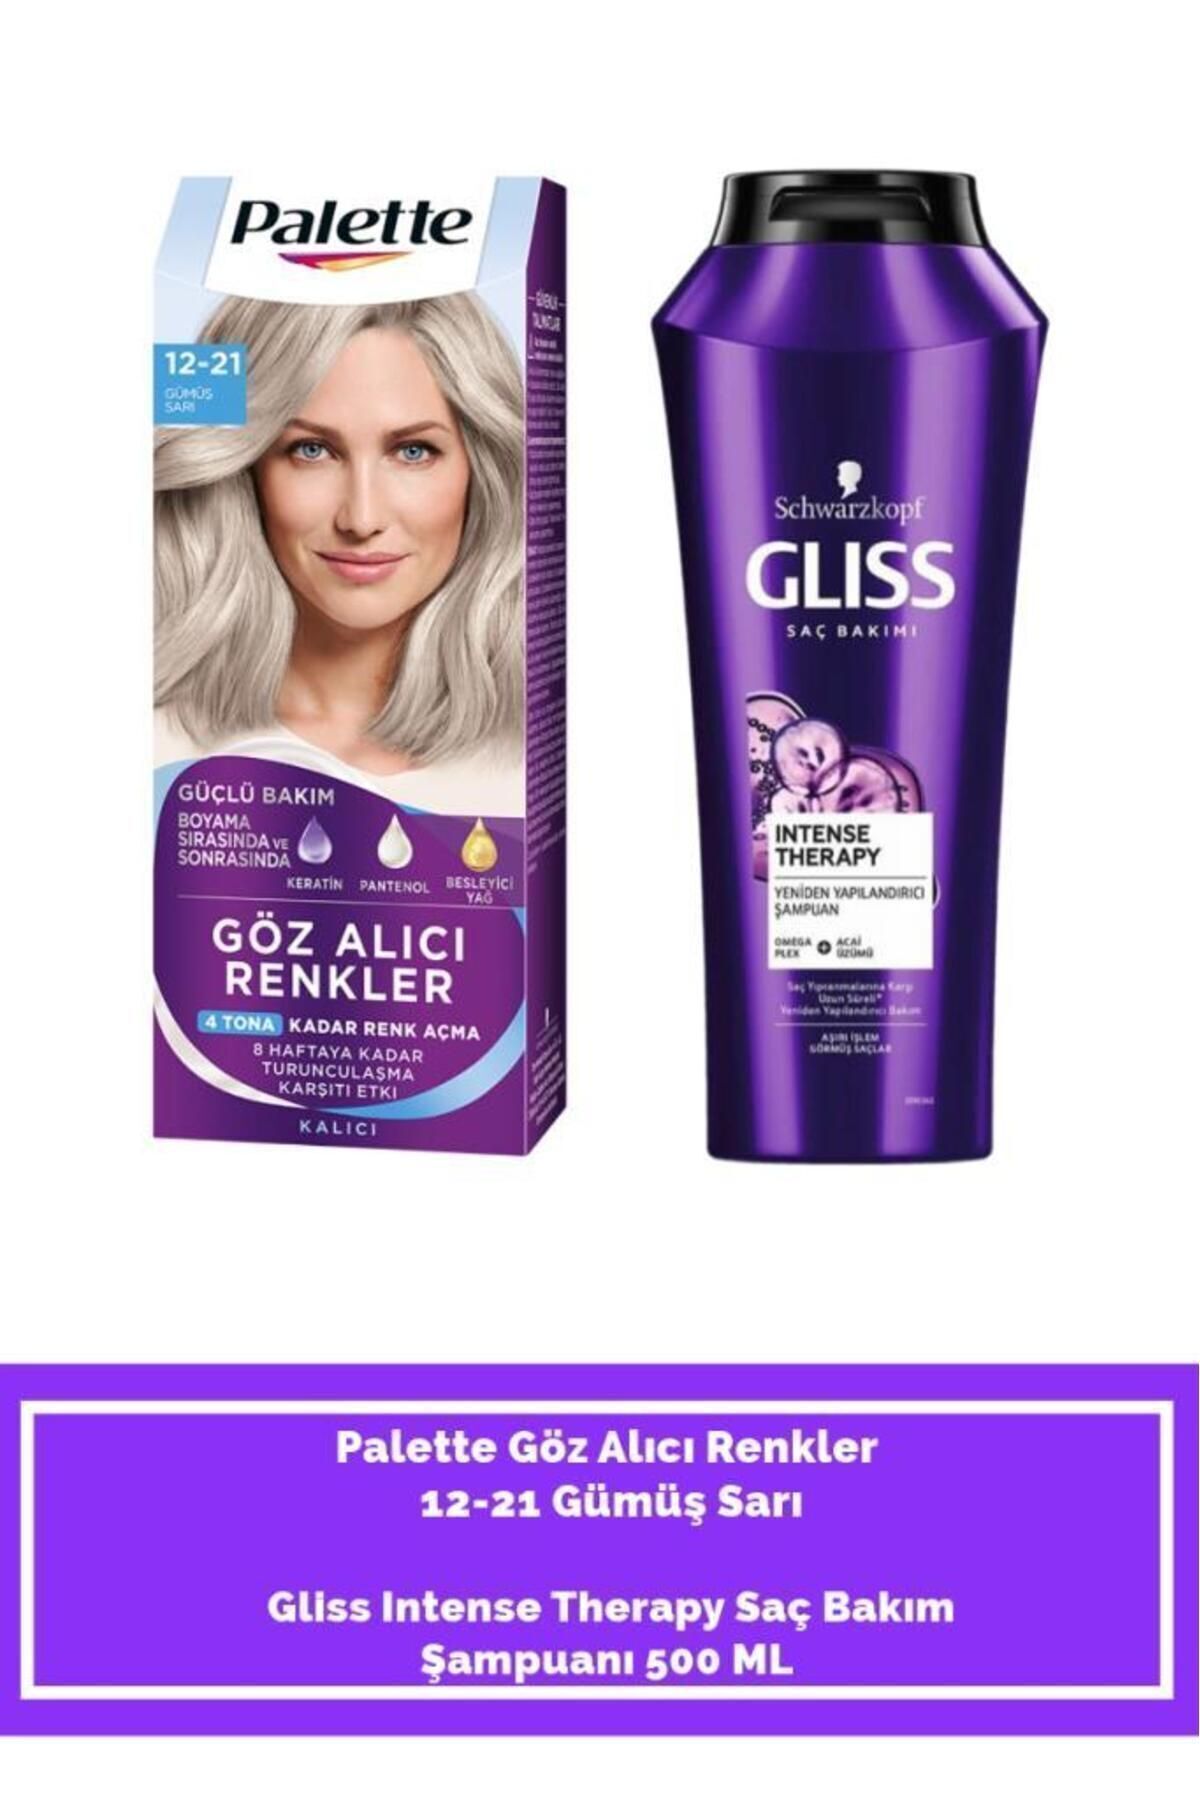 Palette Palette Göz Alıcı Renkler 12-21 Gümüş Sarı+ Gliss Intense Therapy Saç Bakım Şampuanı 500 ML